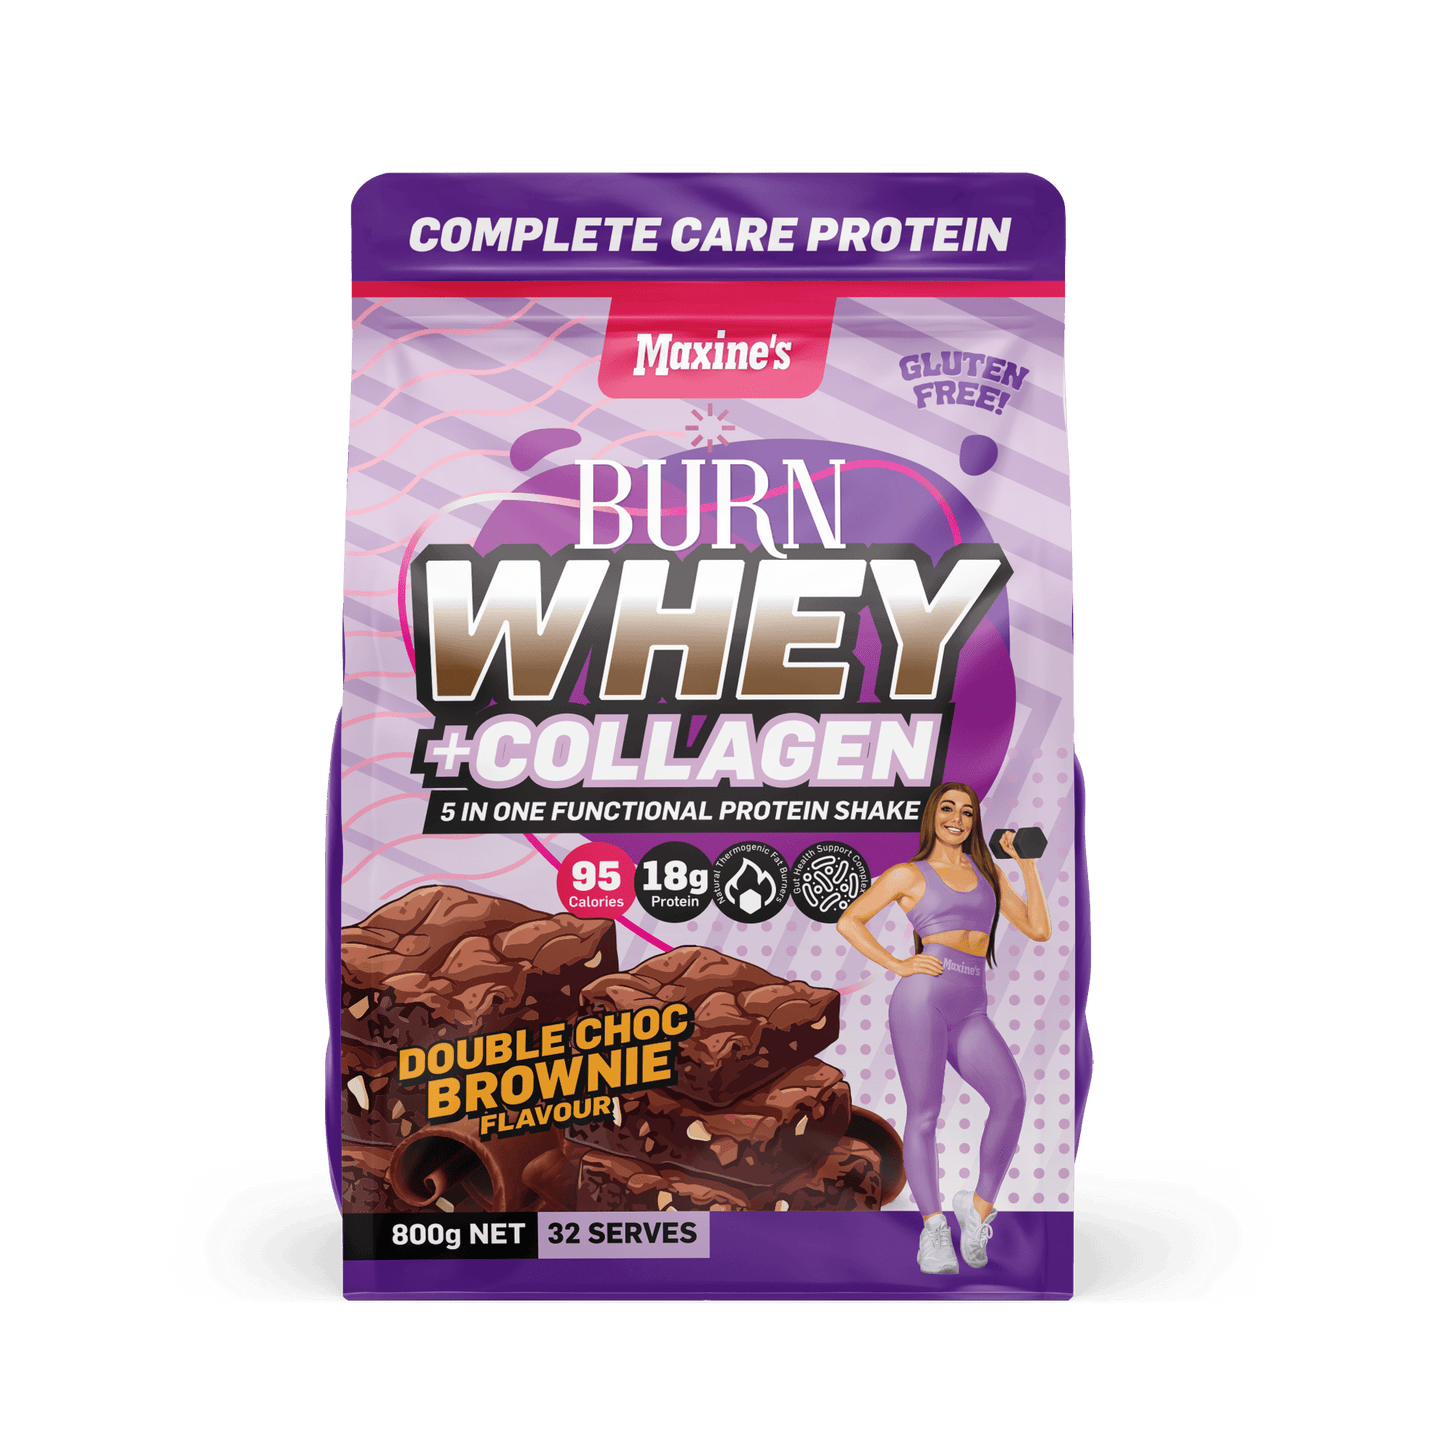 Burn Whey + Collagen Protein